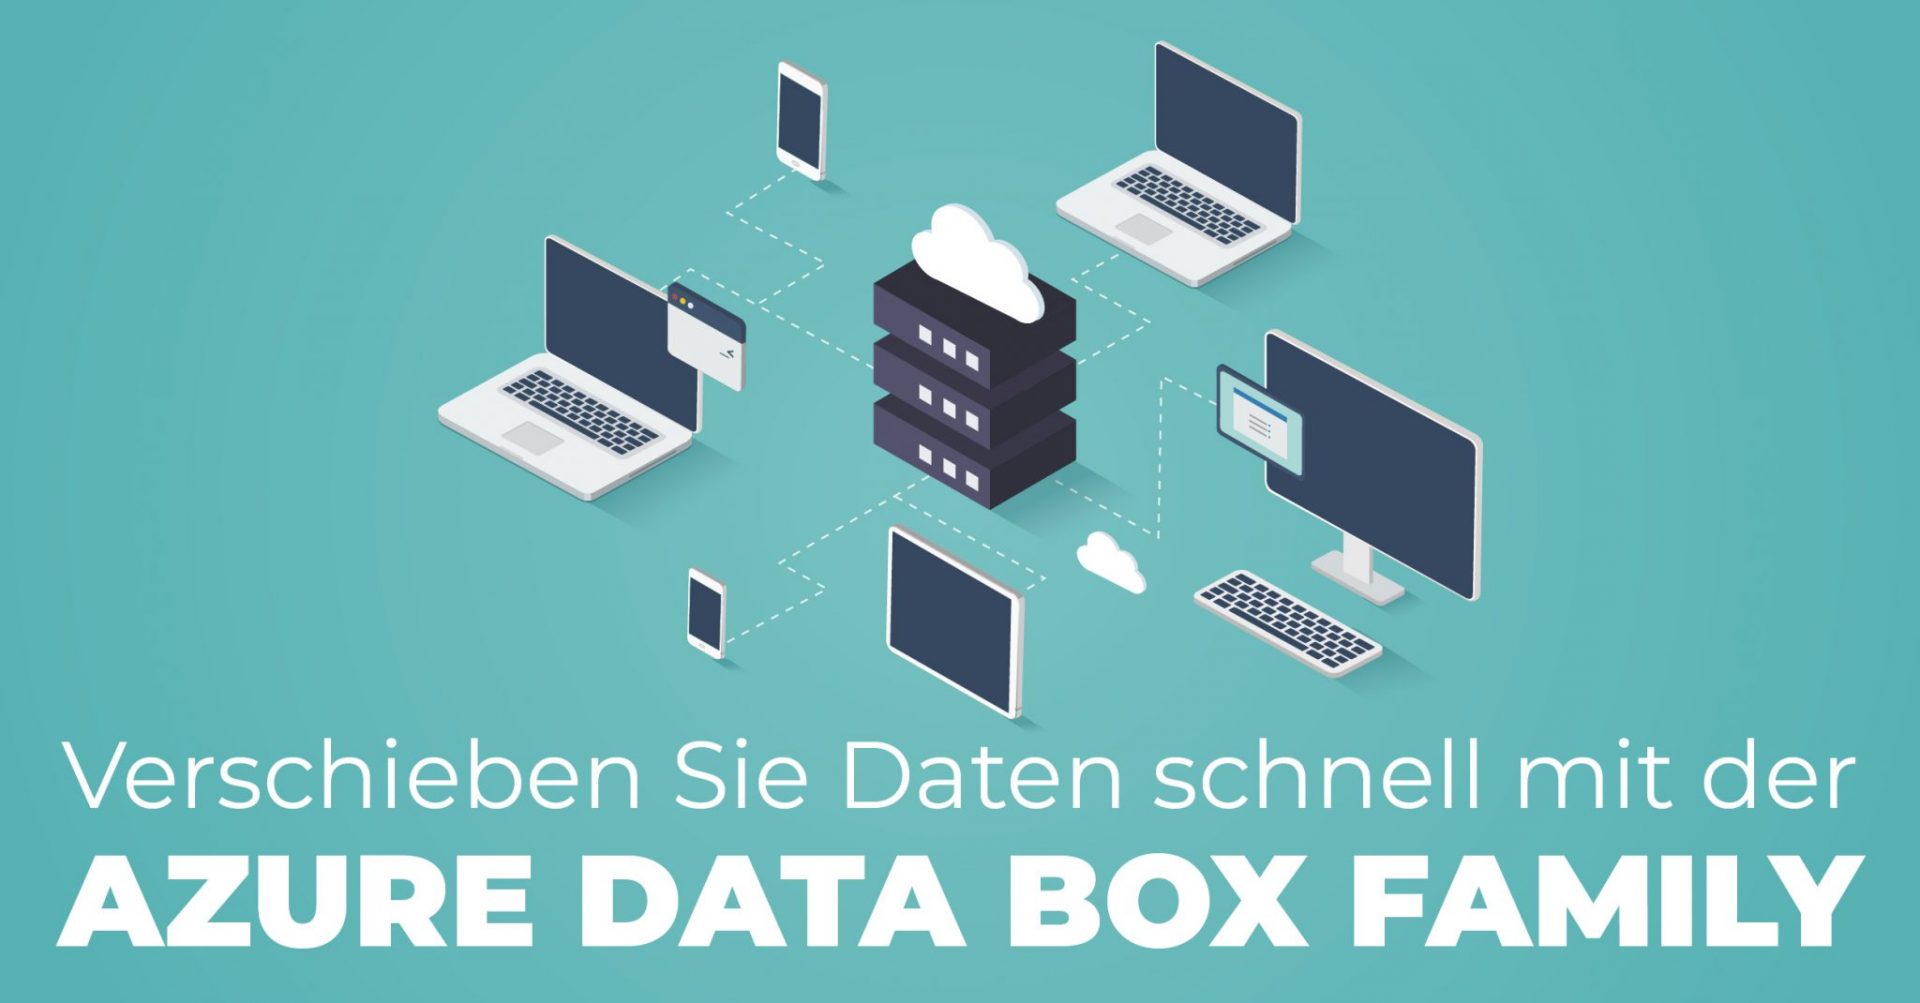 Azure Data Box Family